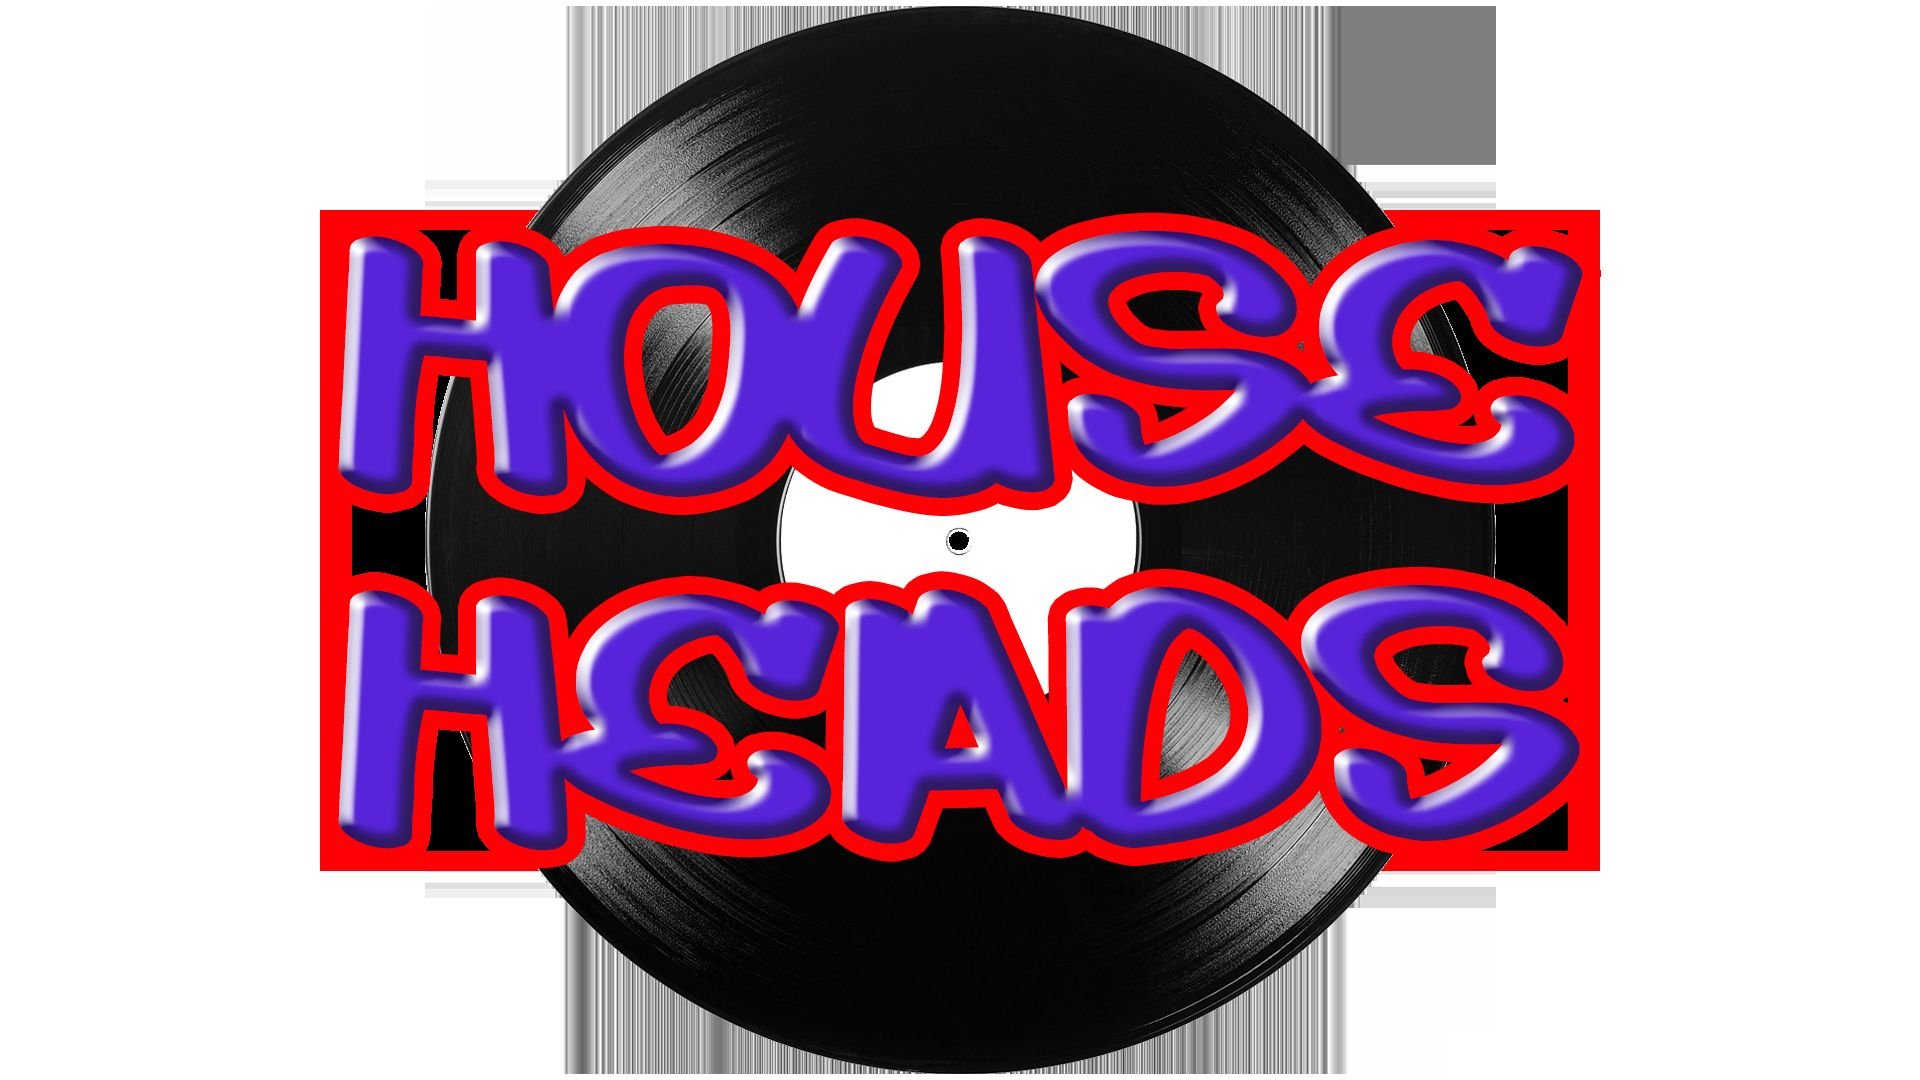 alt_header_The Original HouseHeads Friday Takeover Raid # 33